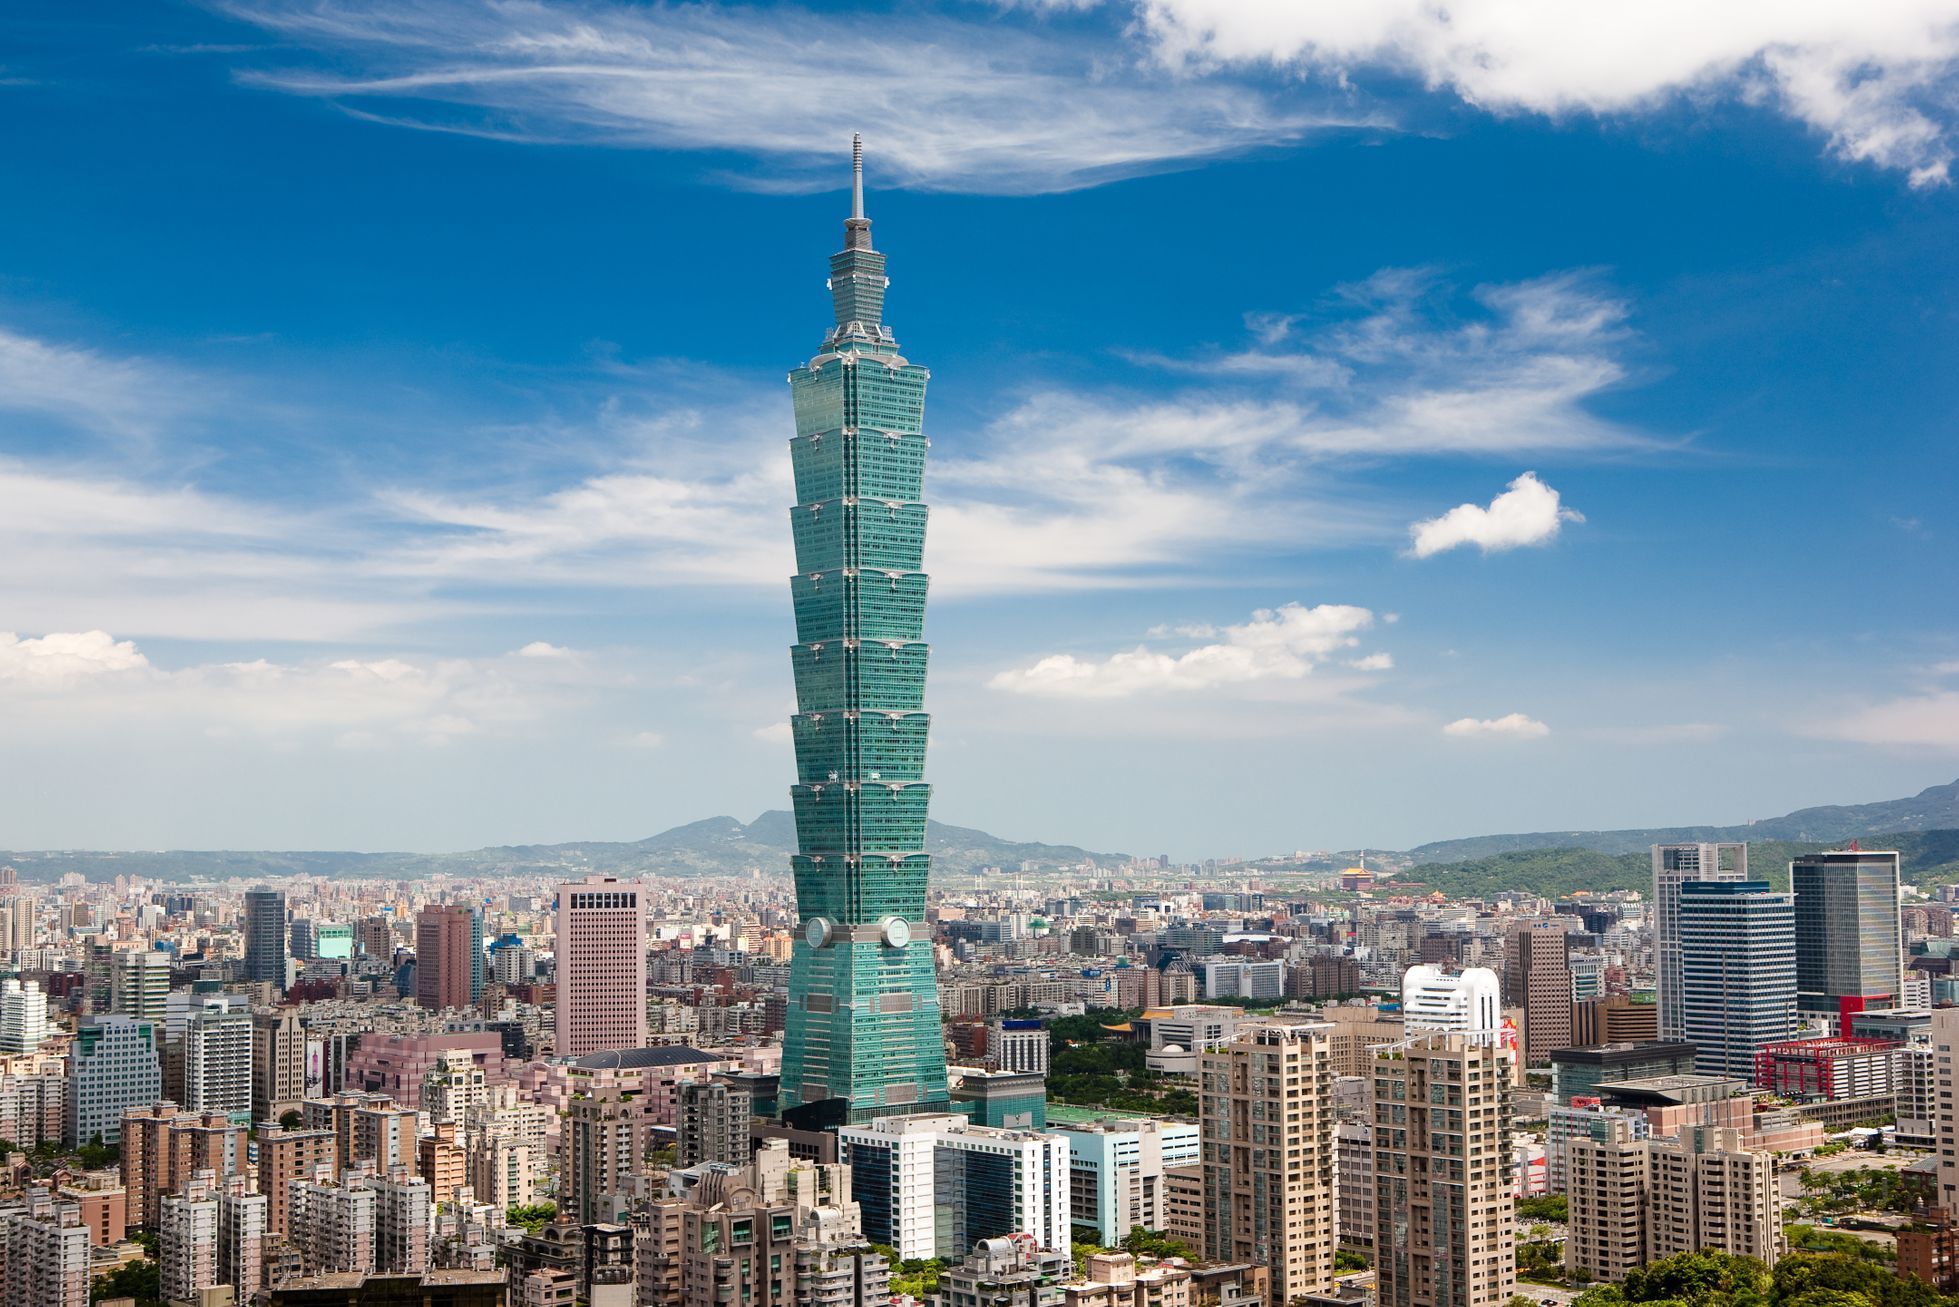 TAIPEI 101 / Jednorázové užití / Fotogalerie / Podívejte se na fotografie 10 nejvyšších budov světa